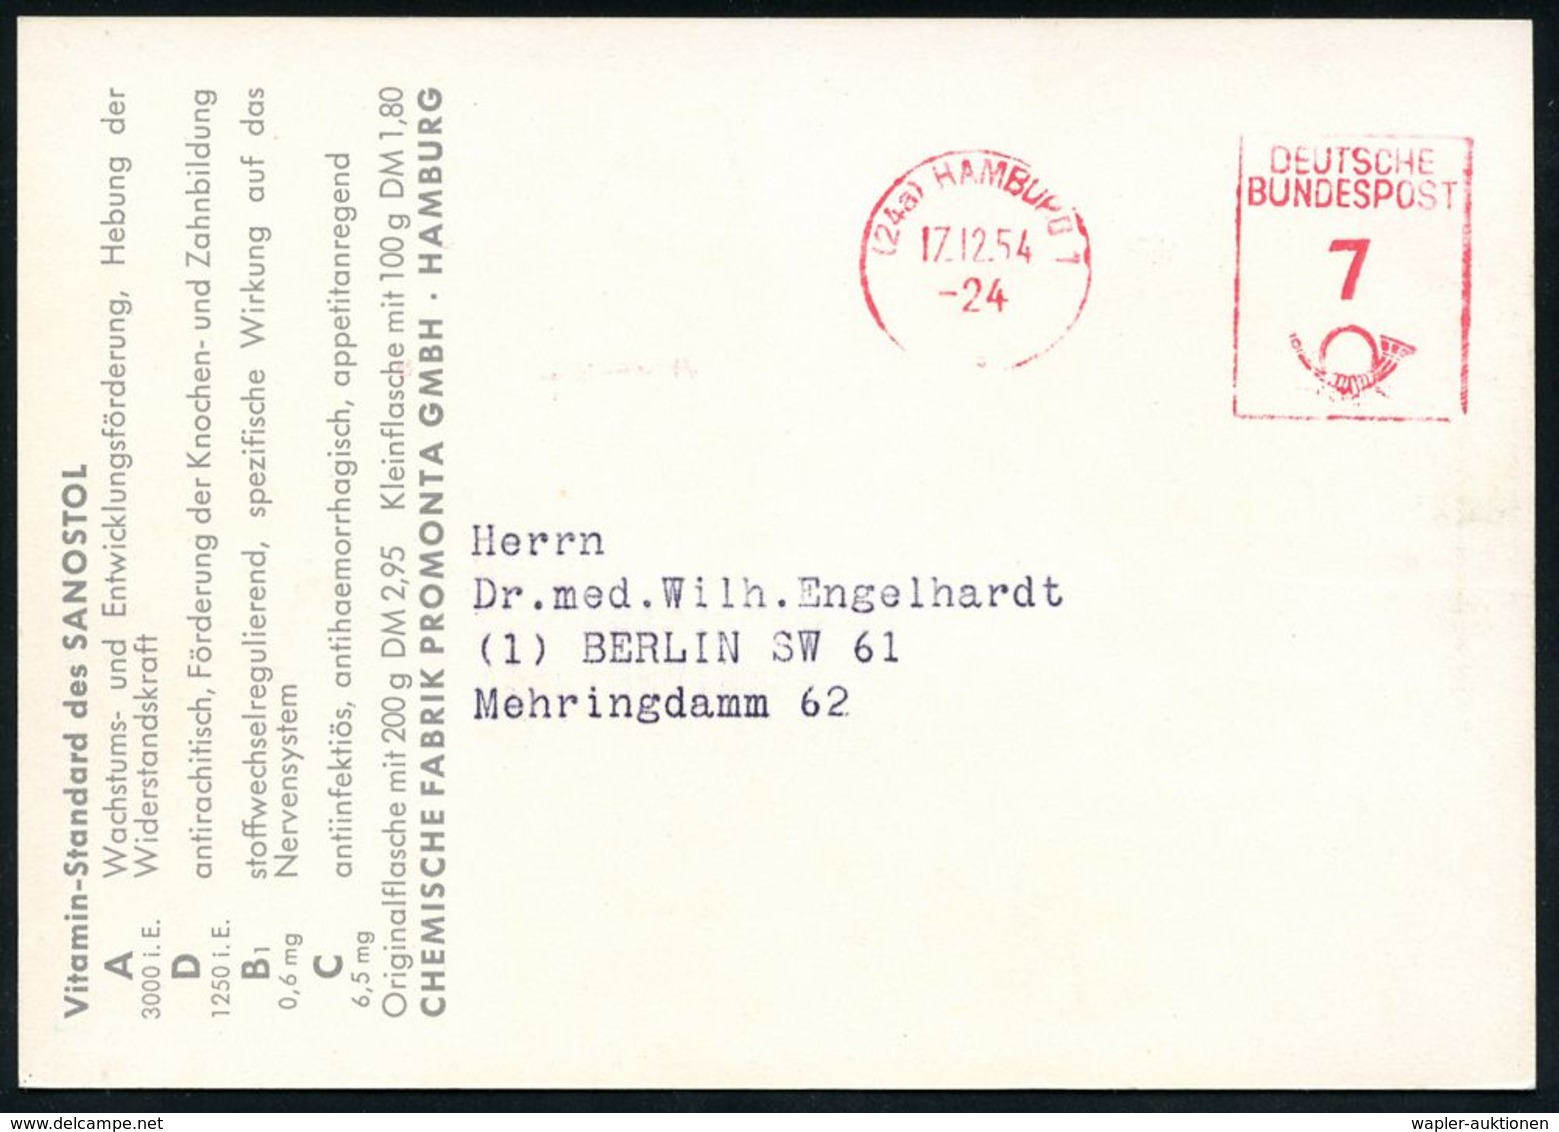 PÄDIATRIE / GYNÄKOLOGIE : (24a) HAMBURG 1/ DEUTSCHE/ BUNDESPOST 1954 (17.12.) PFS 7 Pf. Auf Künstler-Color-Reklame-Ktk.: - Ziekte